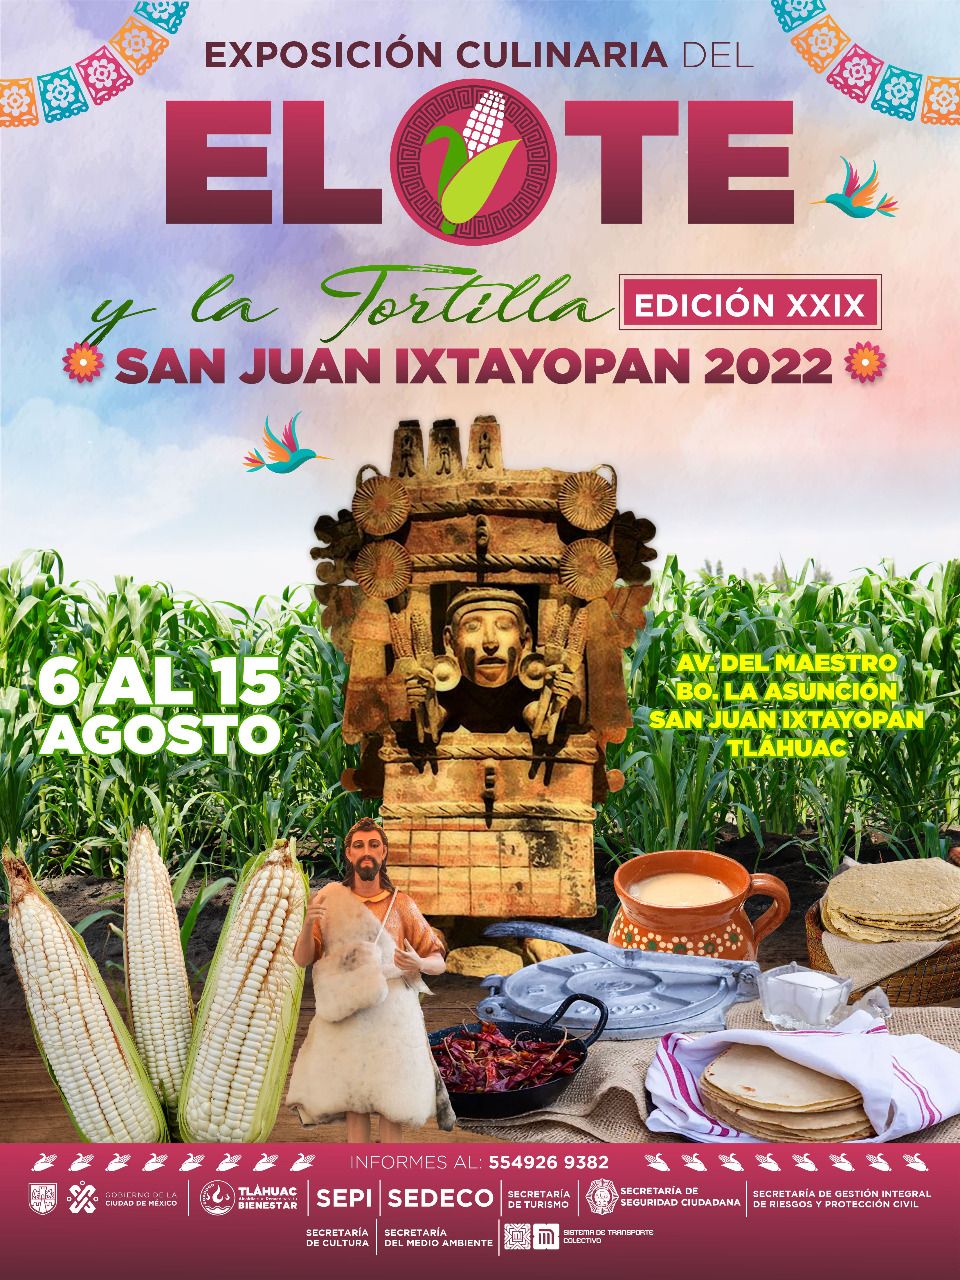 Está de regreso! Tláhuac se prepara para la Feria del Elote – PeriodismoNews